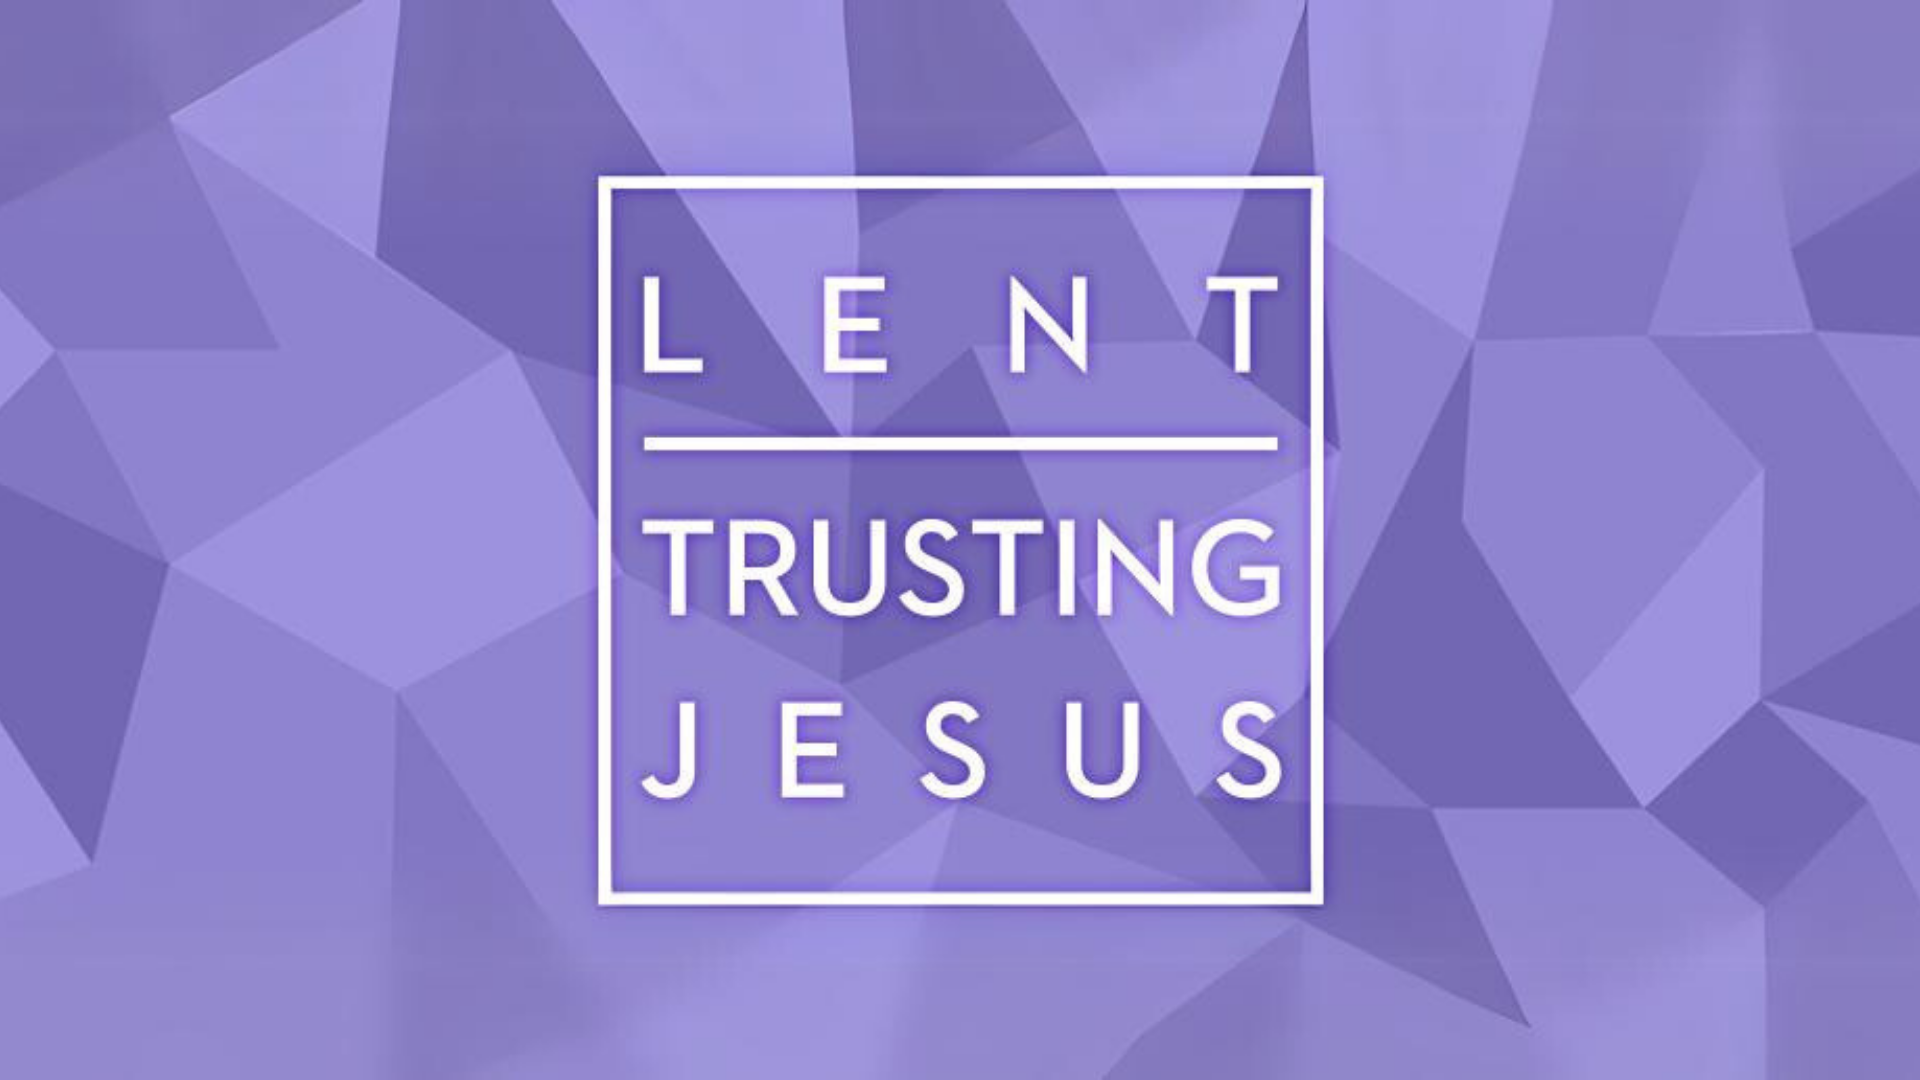 Lent: Trusting Jesus